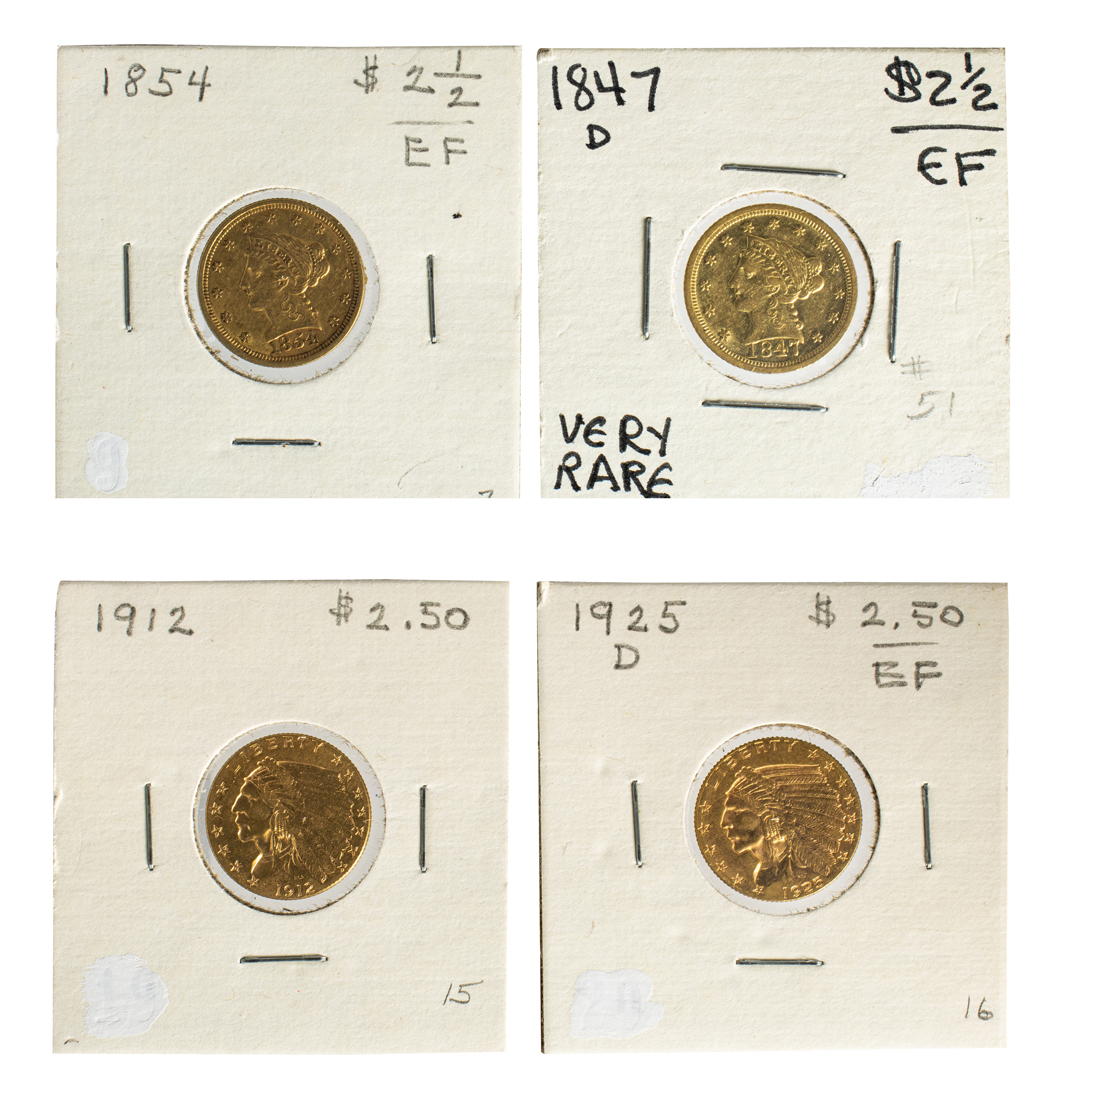 FOUR $2 1/2 GOLD COINS: 1847D (UNC);